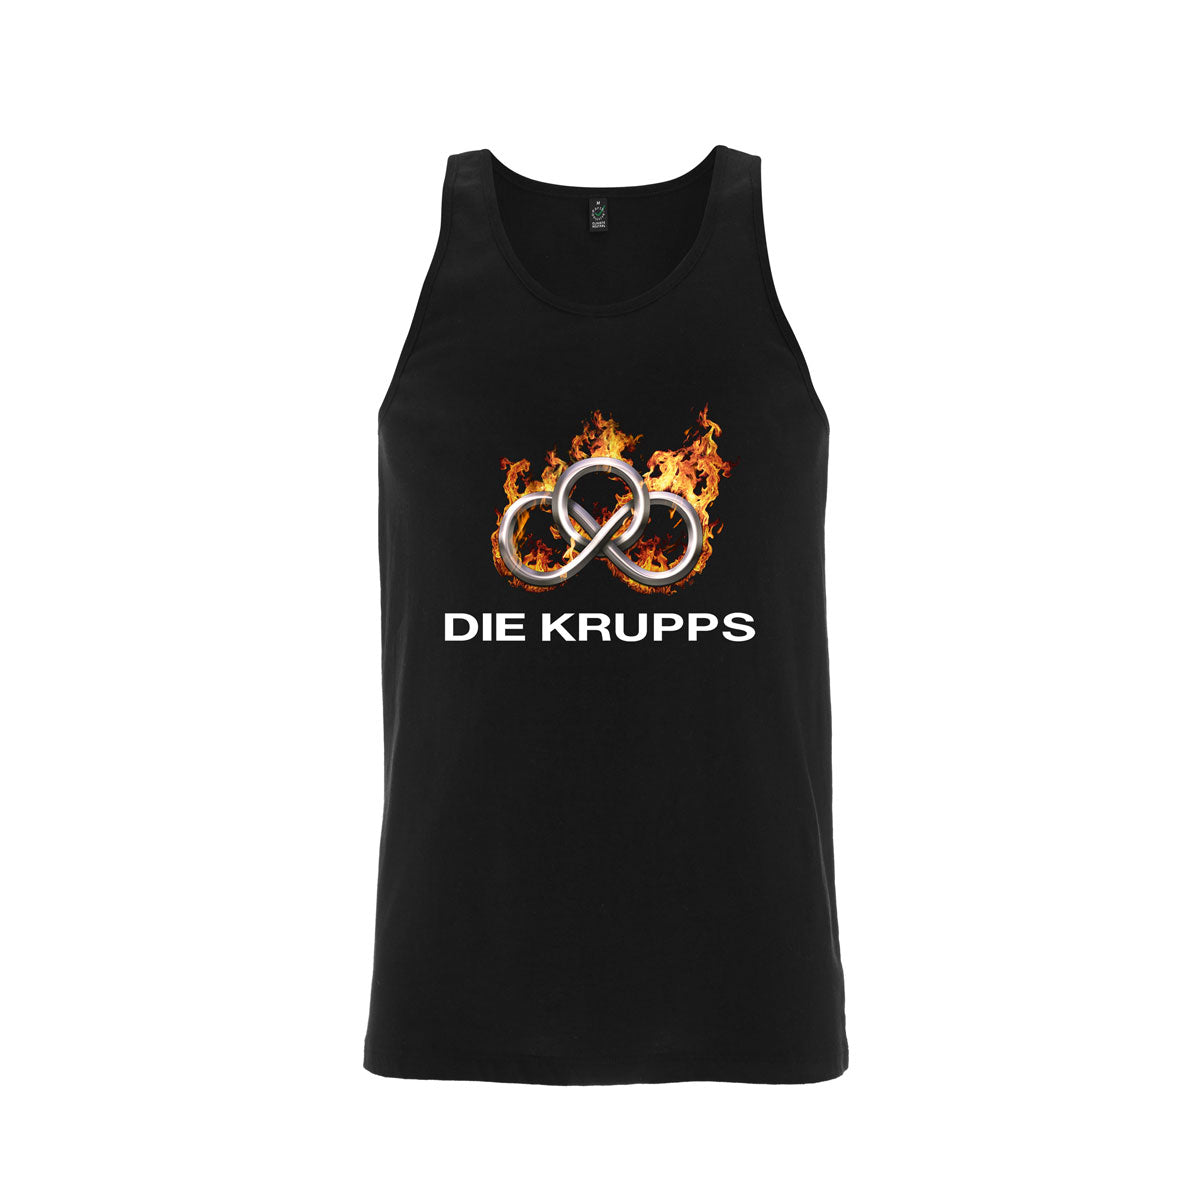 Die Krupps - Burning Ring Logo - Black Tank Top